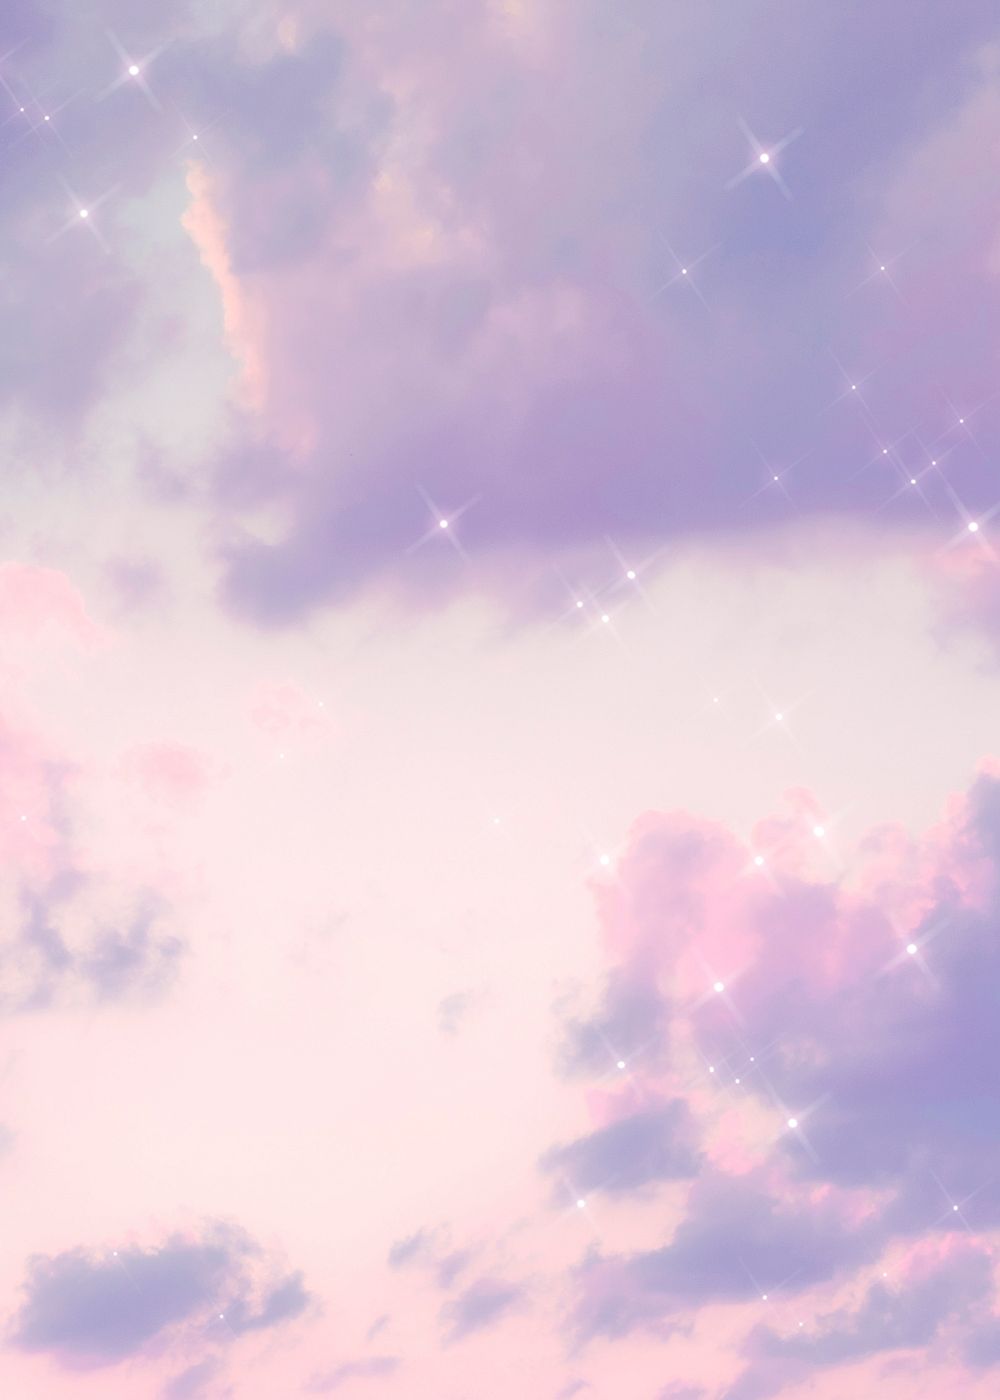 Sparkle cloud pastel purple background | Premium Photo - rawpixel